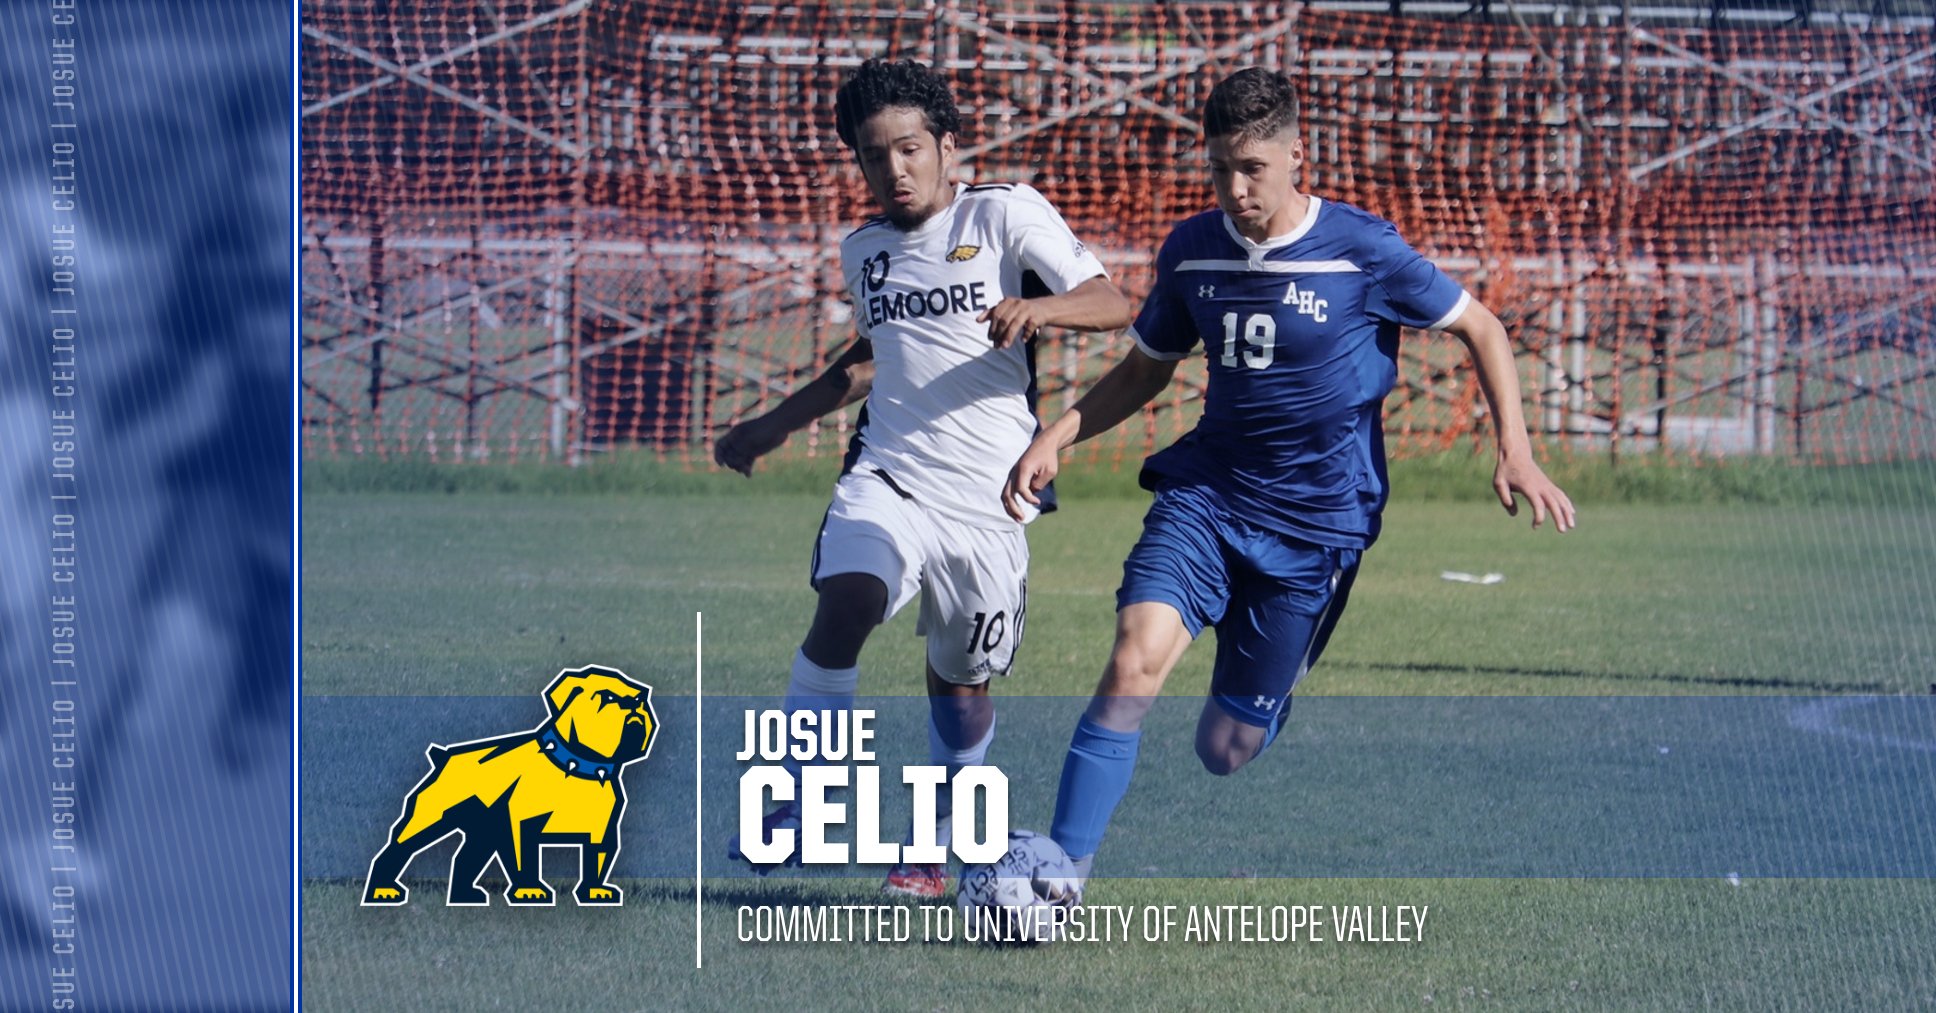 Men's Soccer: Josue Celio Commits to University of Antelope Valley